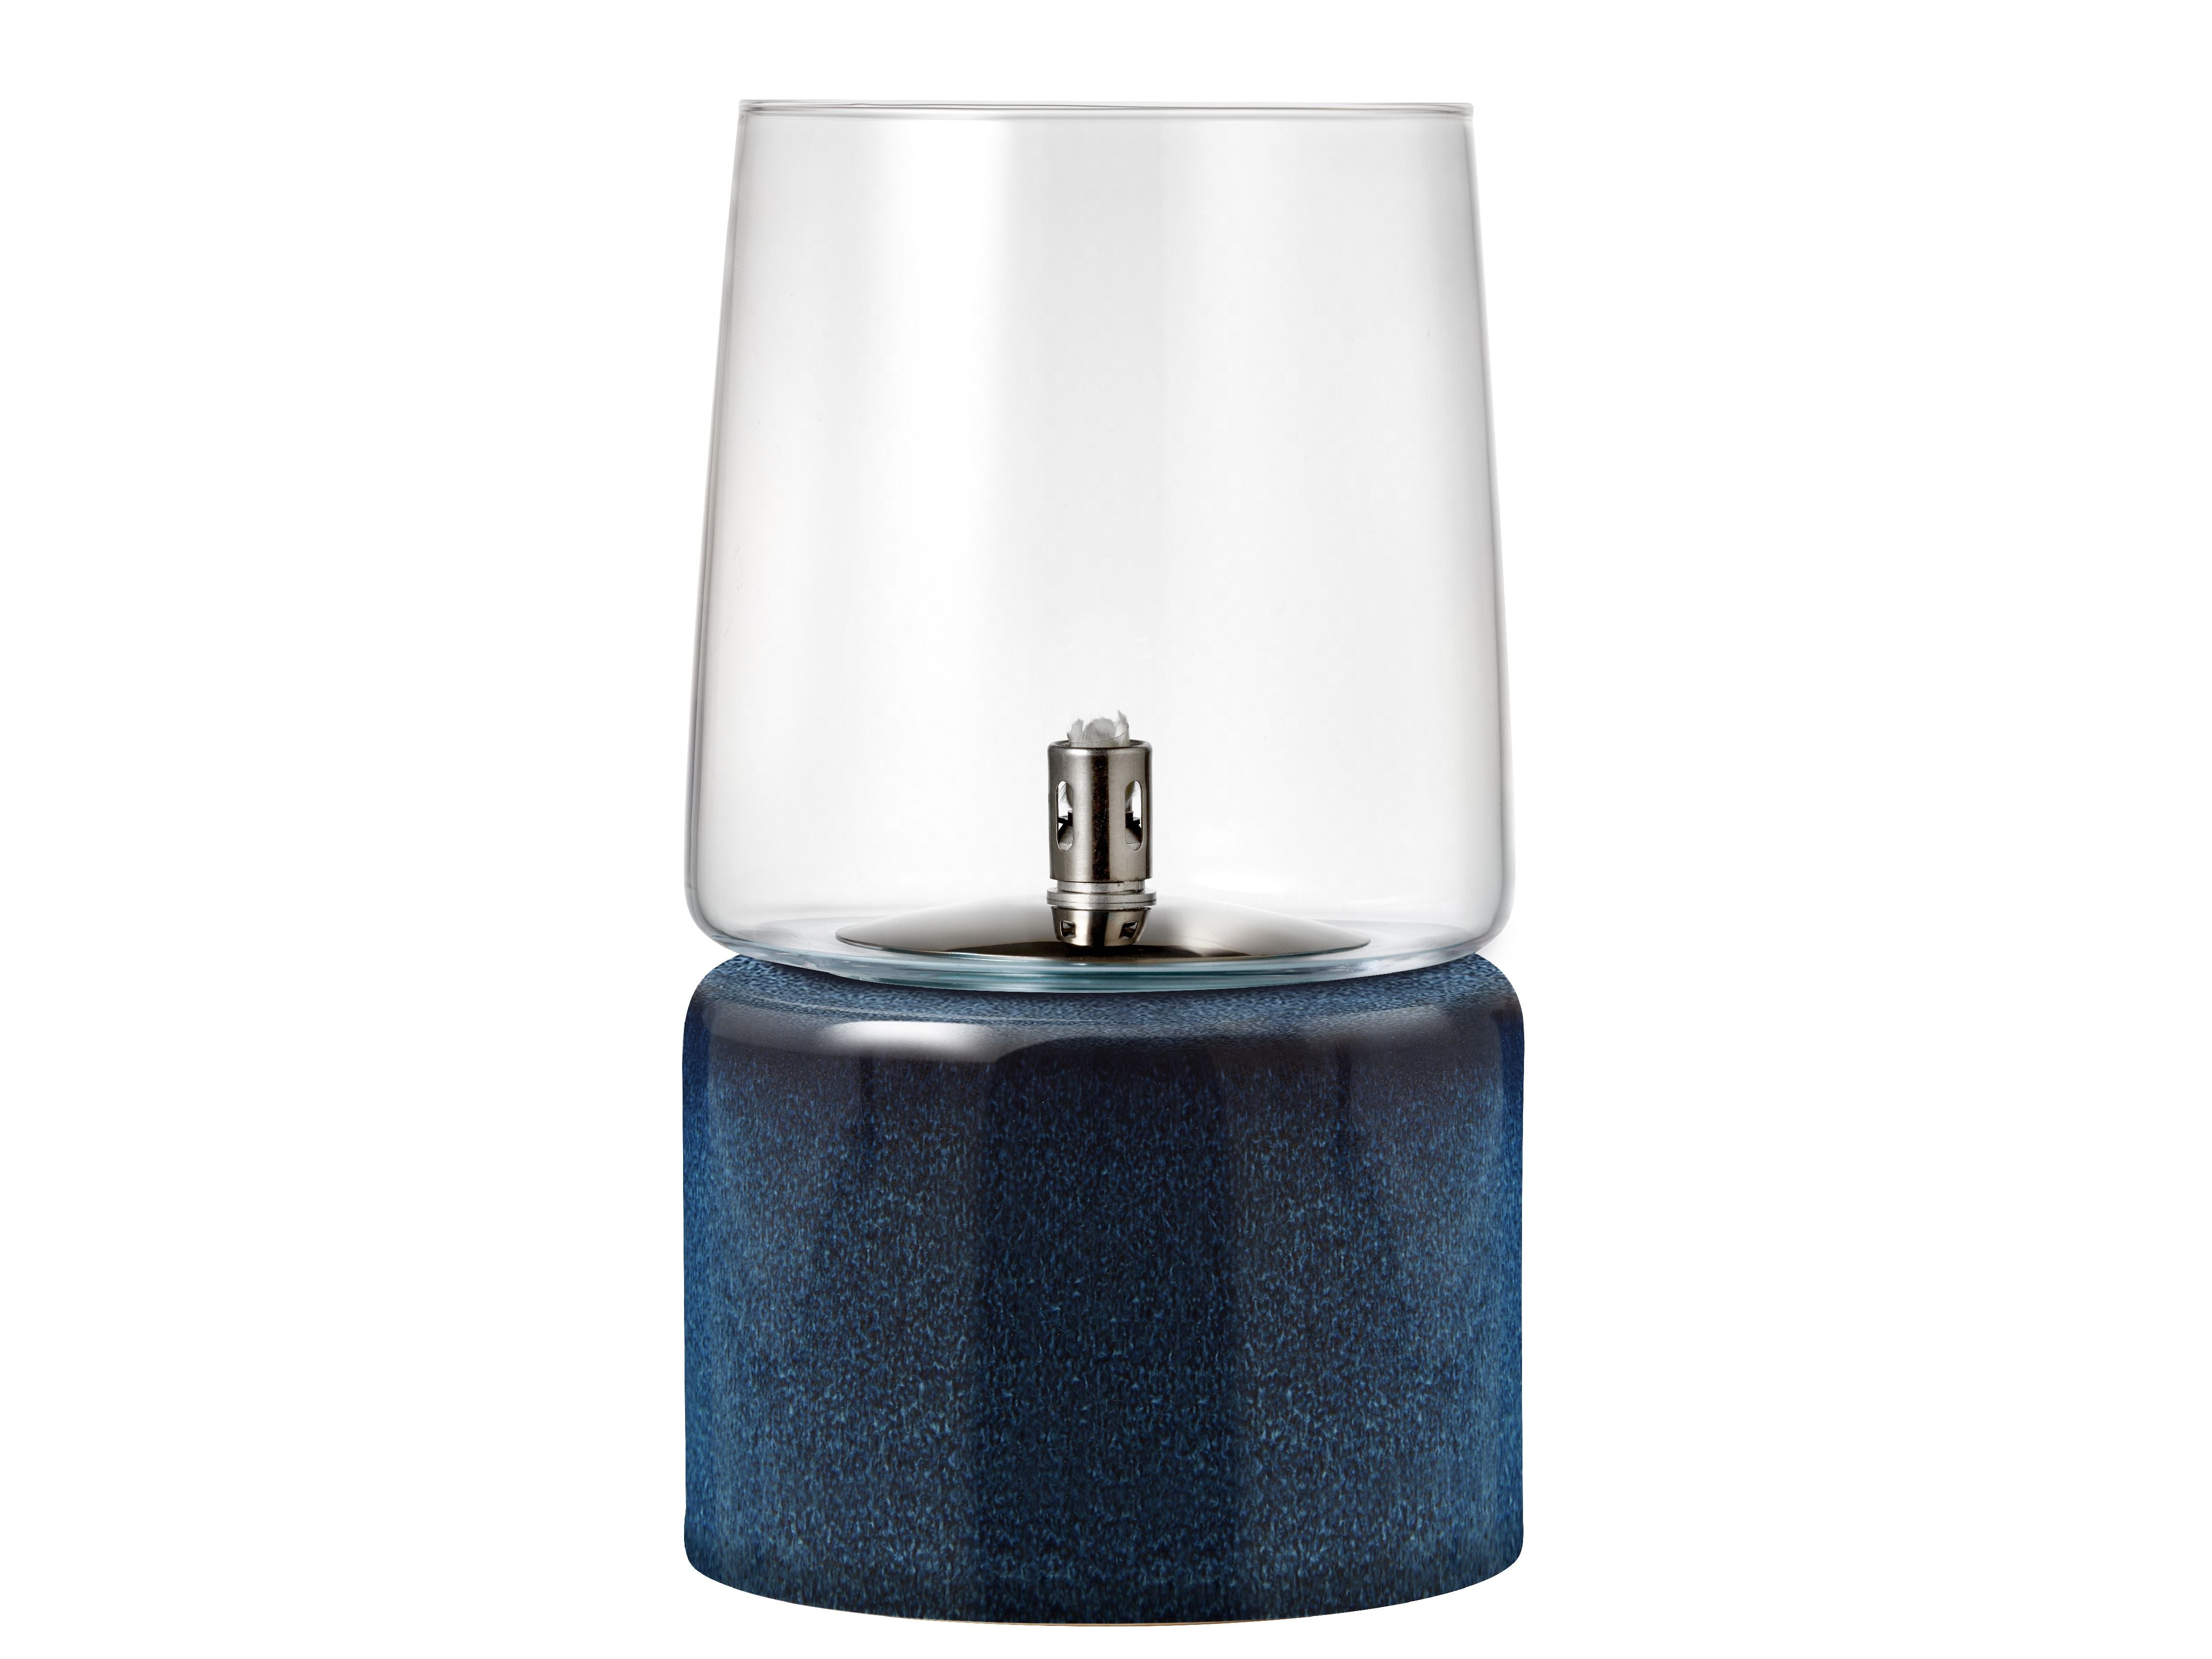 Bitz Gastro Oil Lamp Øx H 15x26 cm, blå